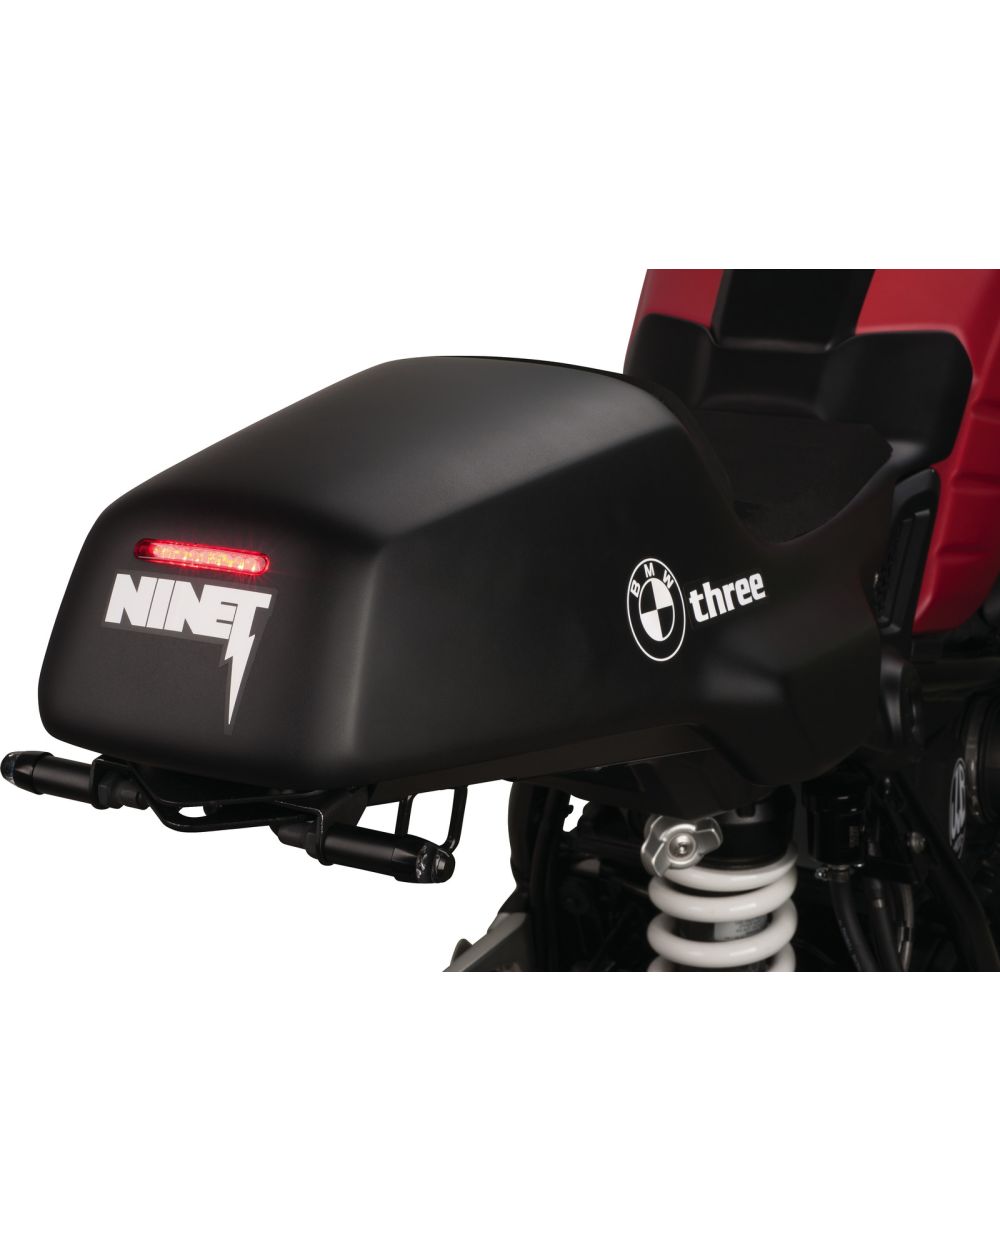 JvB-moto Racer-Heck, GFK, inkl. Montage-Set und LED-Rücklicht (Lieferung  ohne Sitzpolster, siehe z.B. Art. JVB0059)